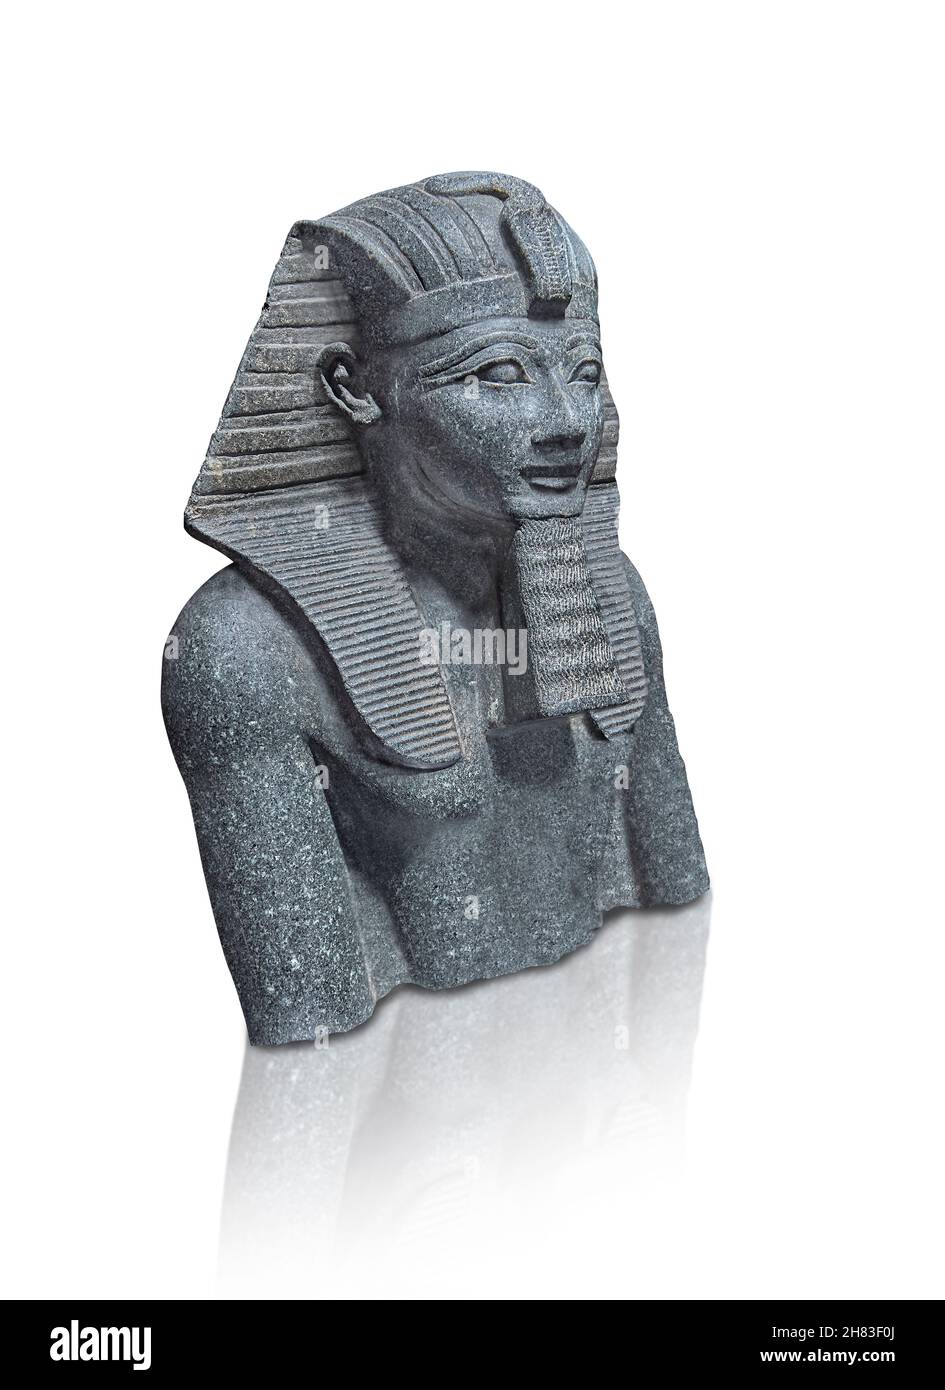 Alte ägyptische Statue von Tuthmosis III., 1504 - 1452 v. Chr., 18th Dynastie. Kunsthistorisches Museum Wien Inv. AS 70. Diorit. Trotz der Abwesenheit eines Stockfoto